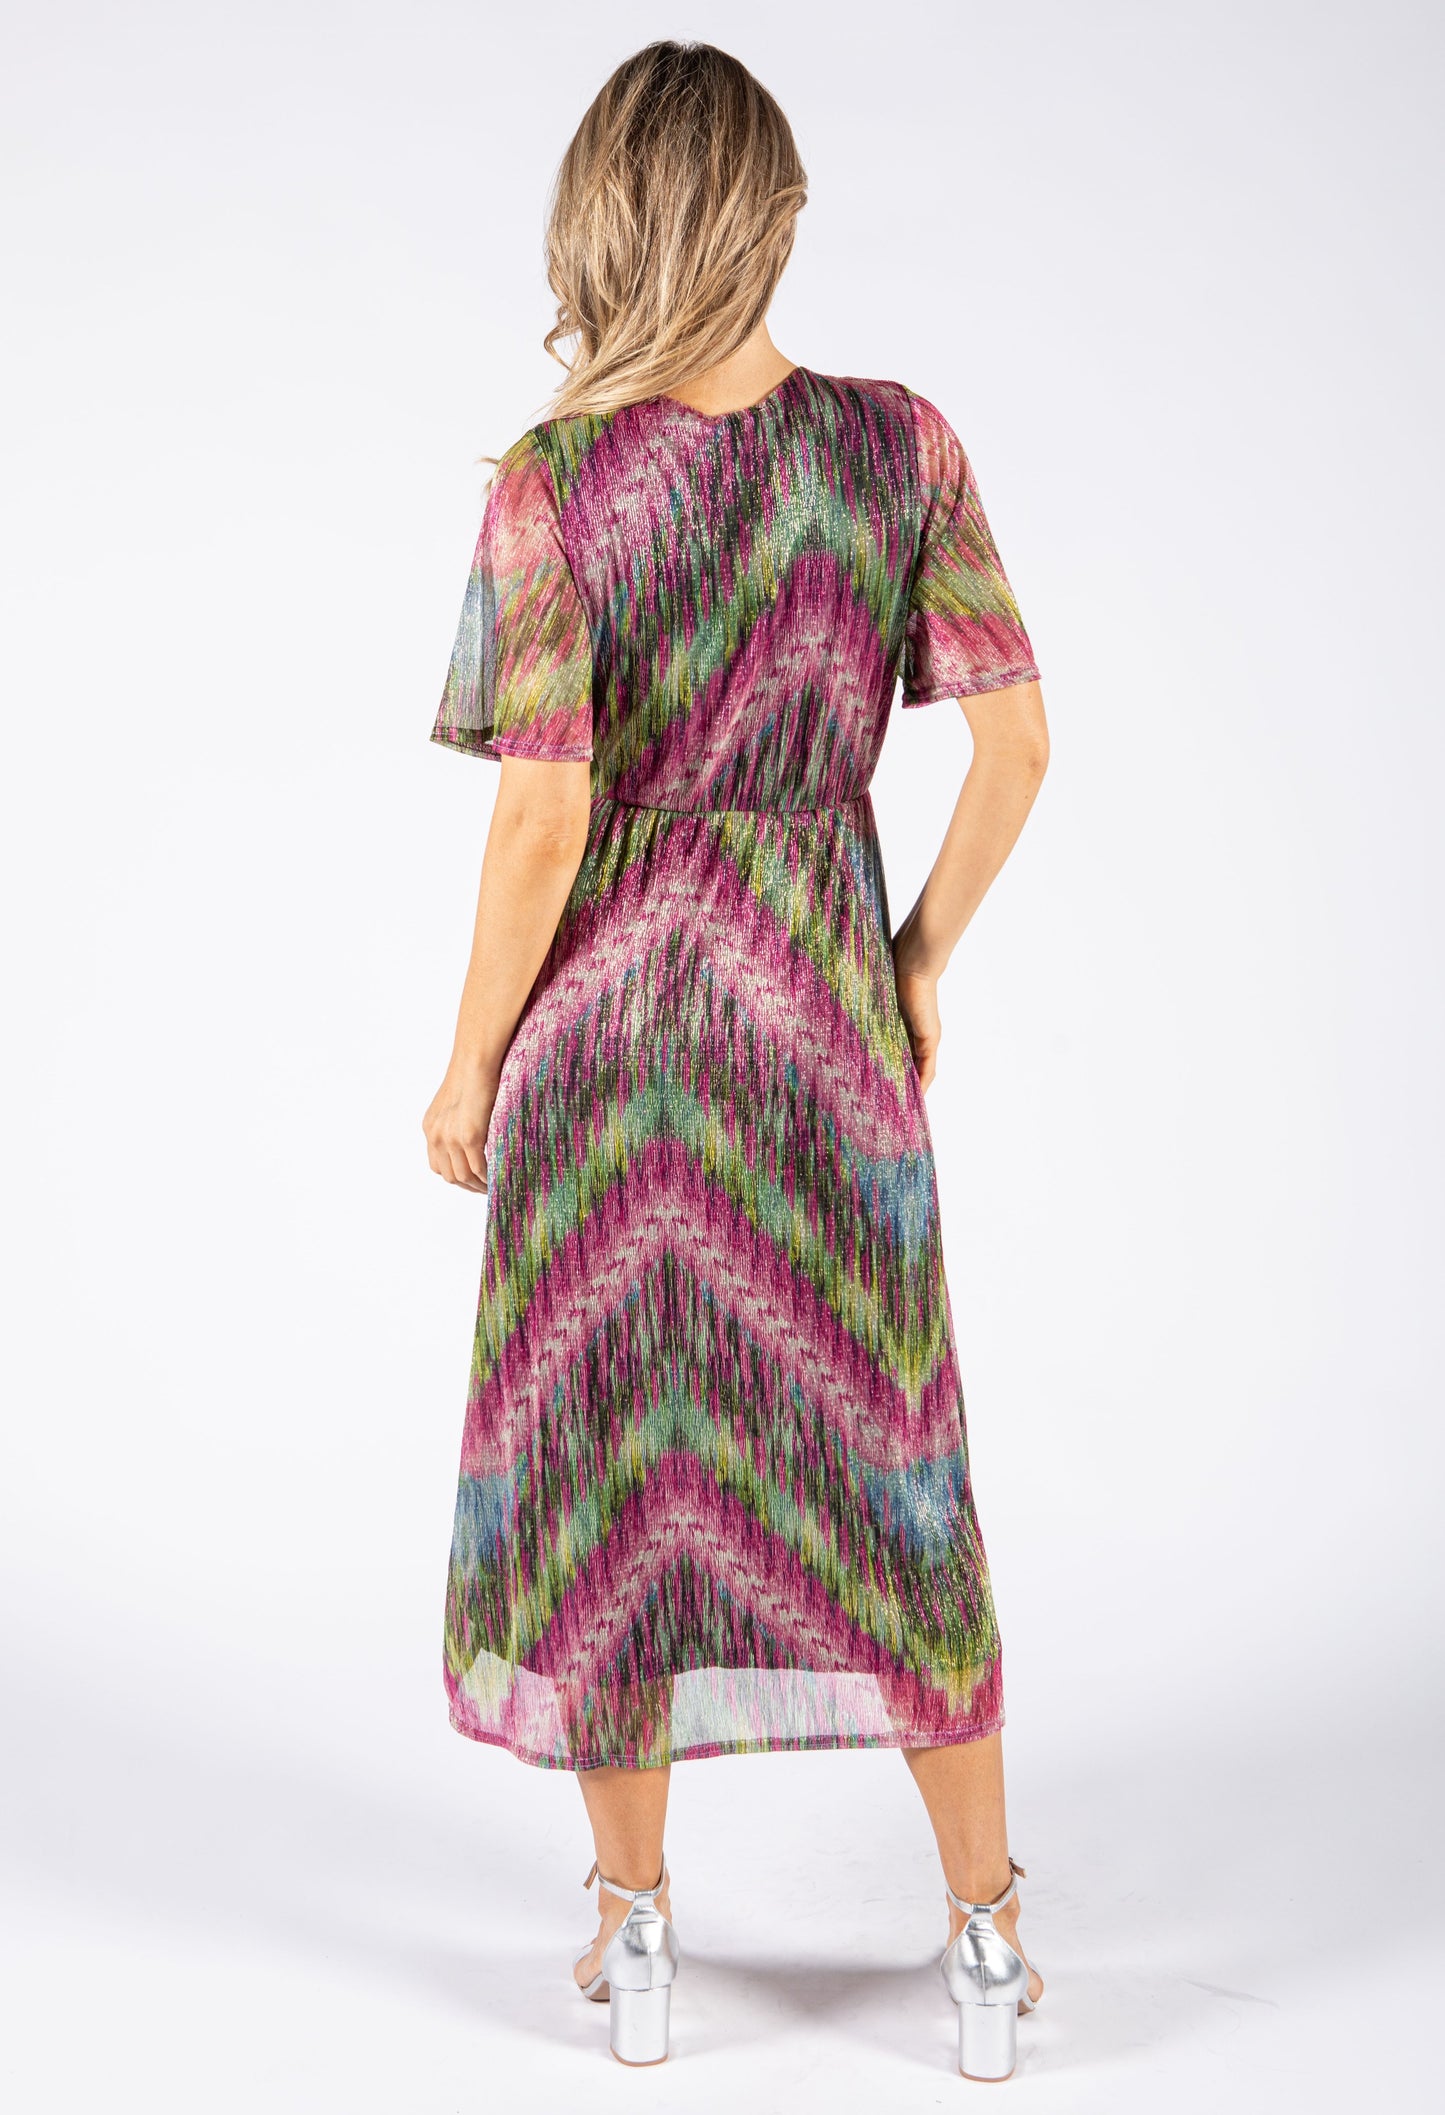 Shimmer Crossover Neckline Dress